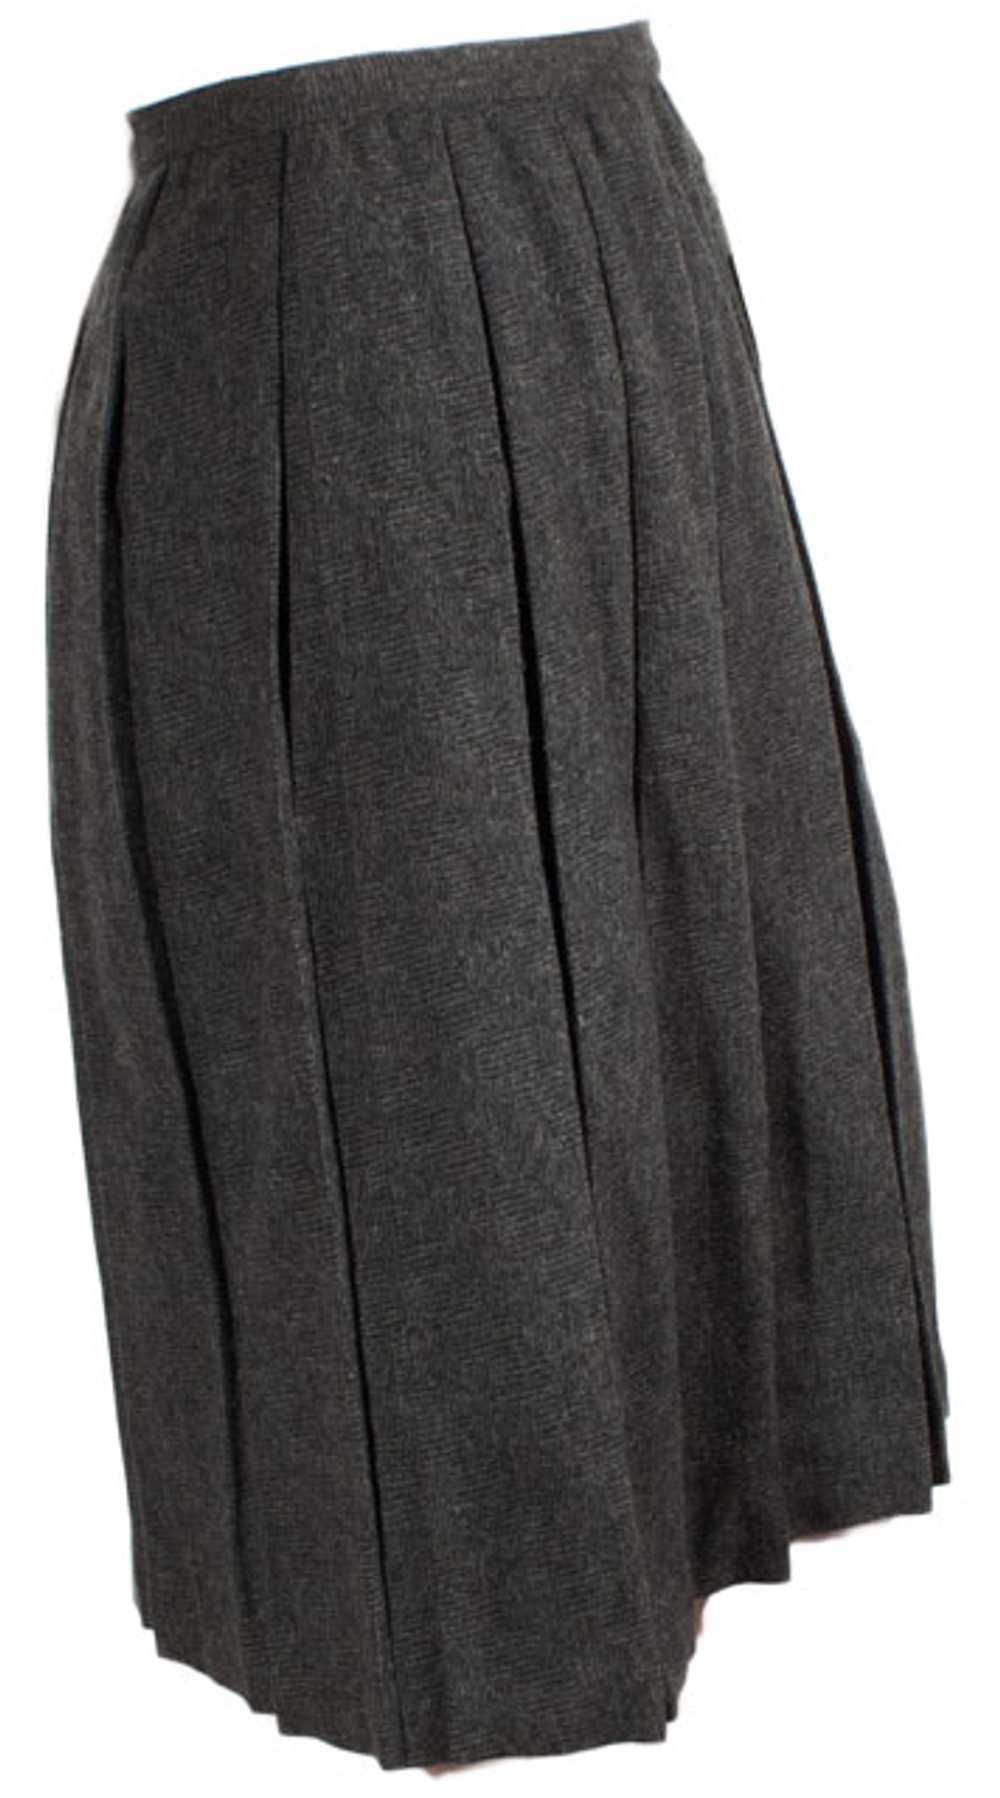 Vintage Pleated Collegiate Skirt - image 1